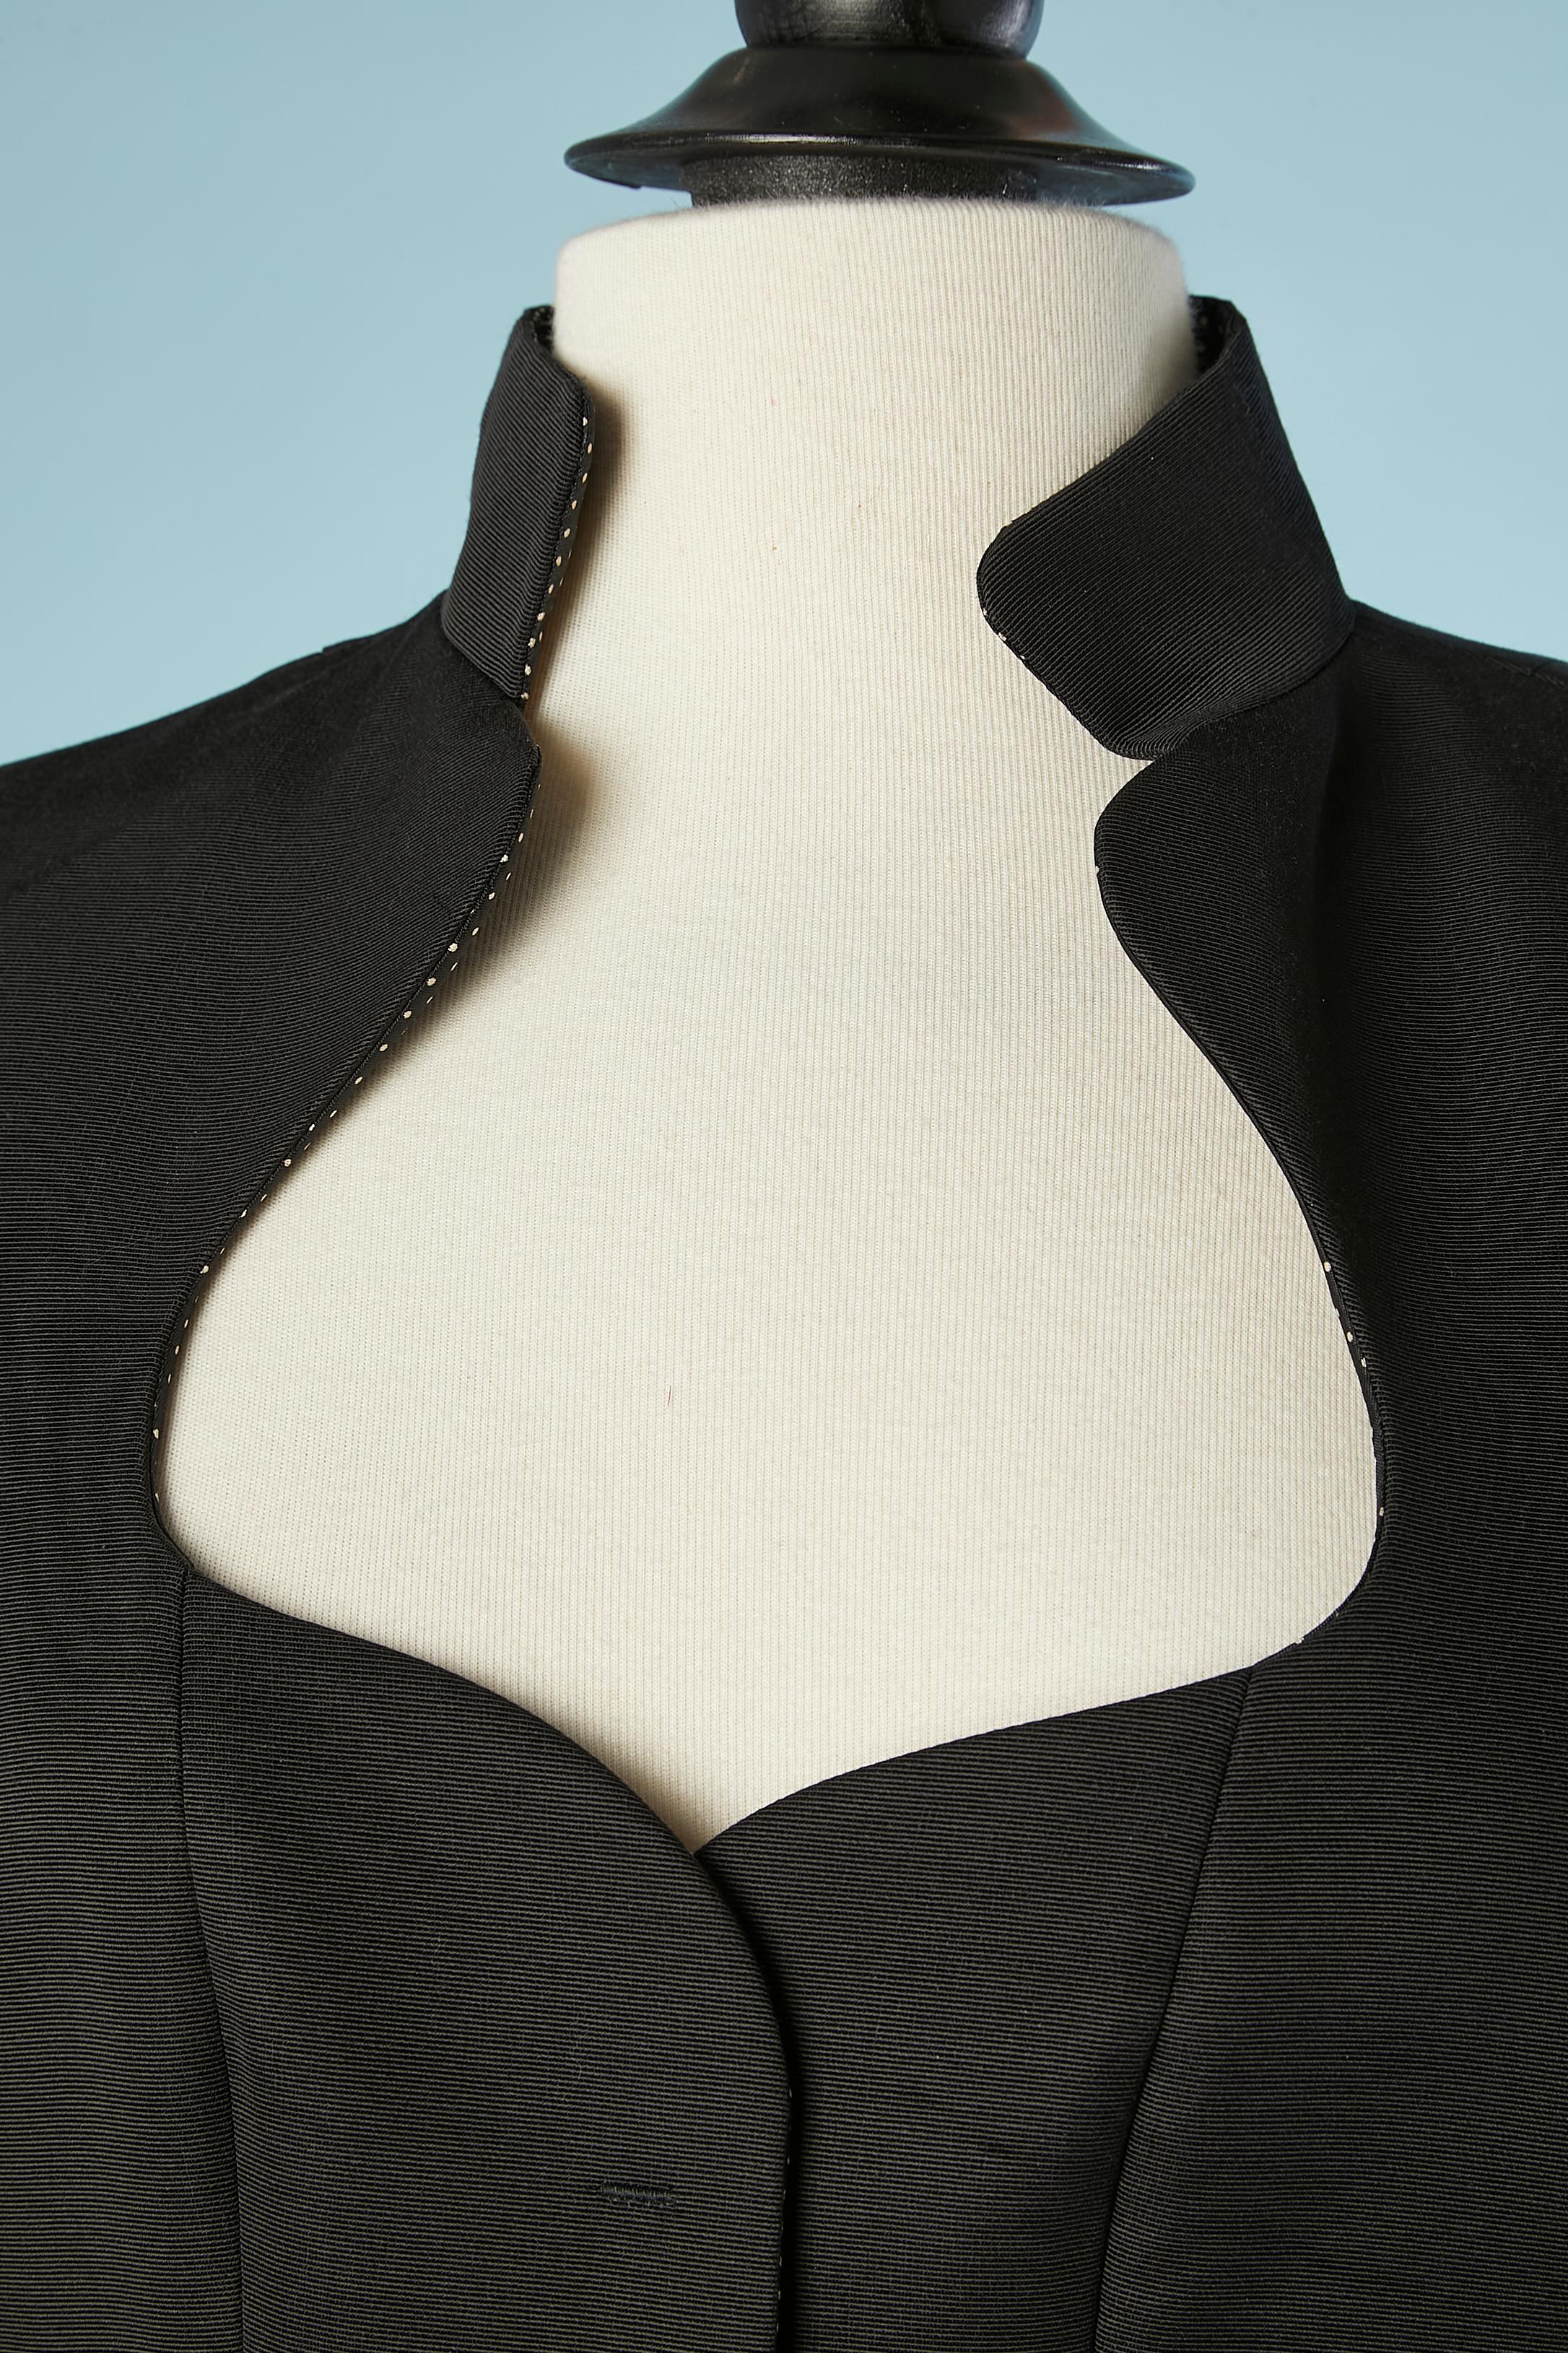 Veste noire à simple boutonnage avec boutons de marque. Composition du tissu : 68% coton, 32% rayonne. Doublure à pois. 
TAILLE 40